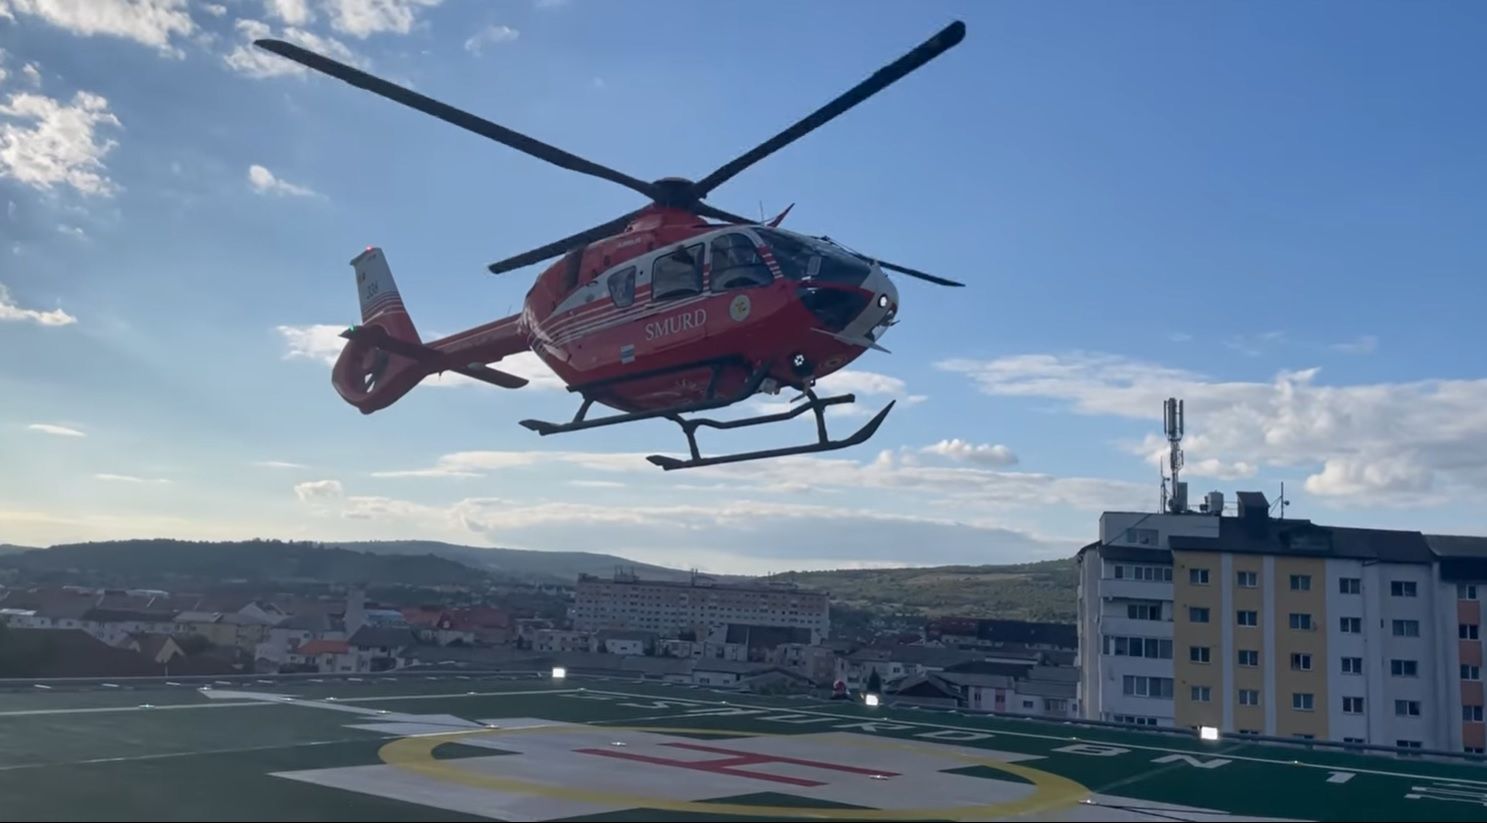 Heliportul de pe Spitalul Județean de Urgență din Bistrița a fost inaugurat